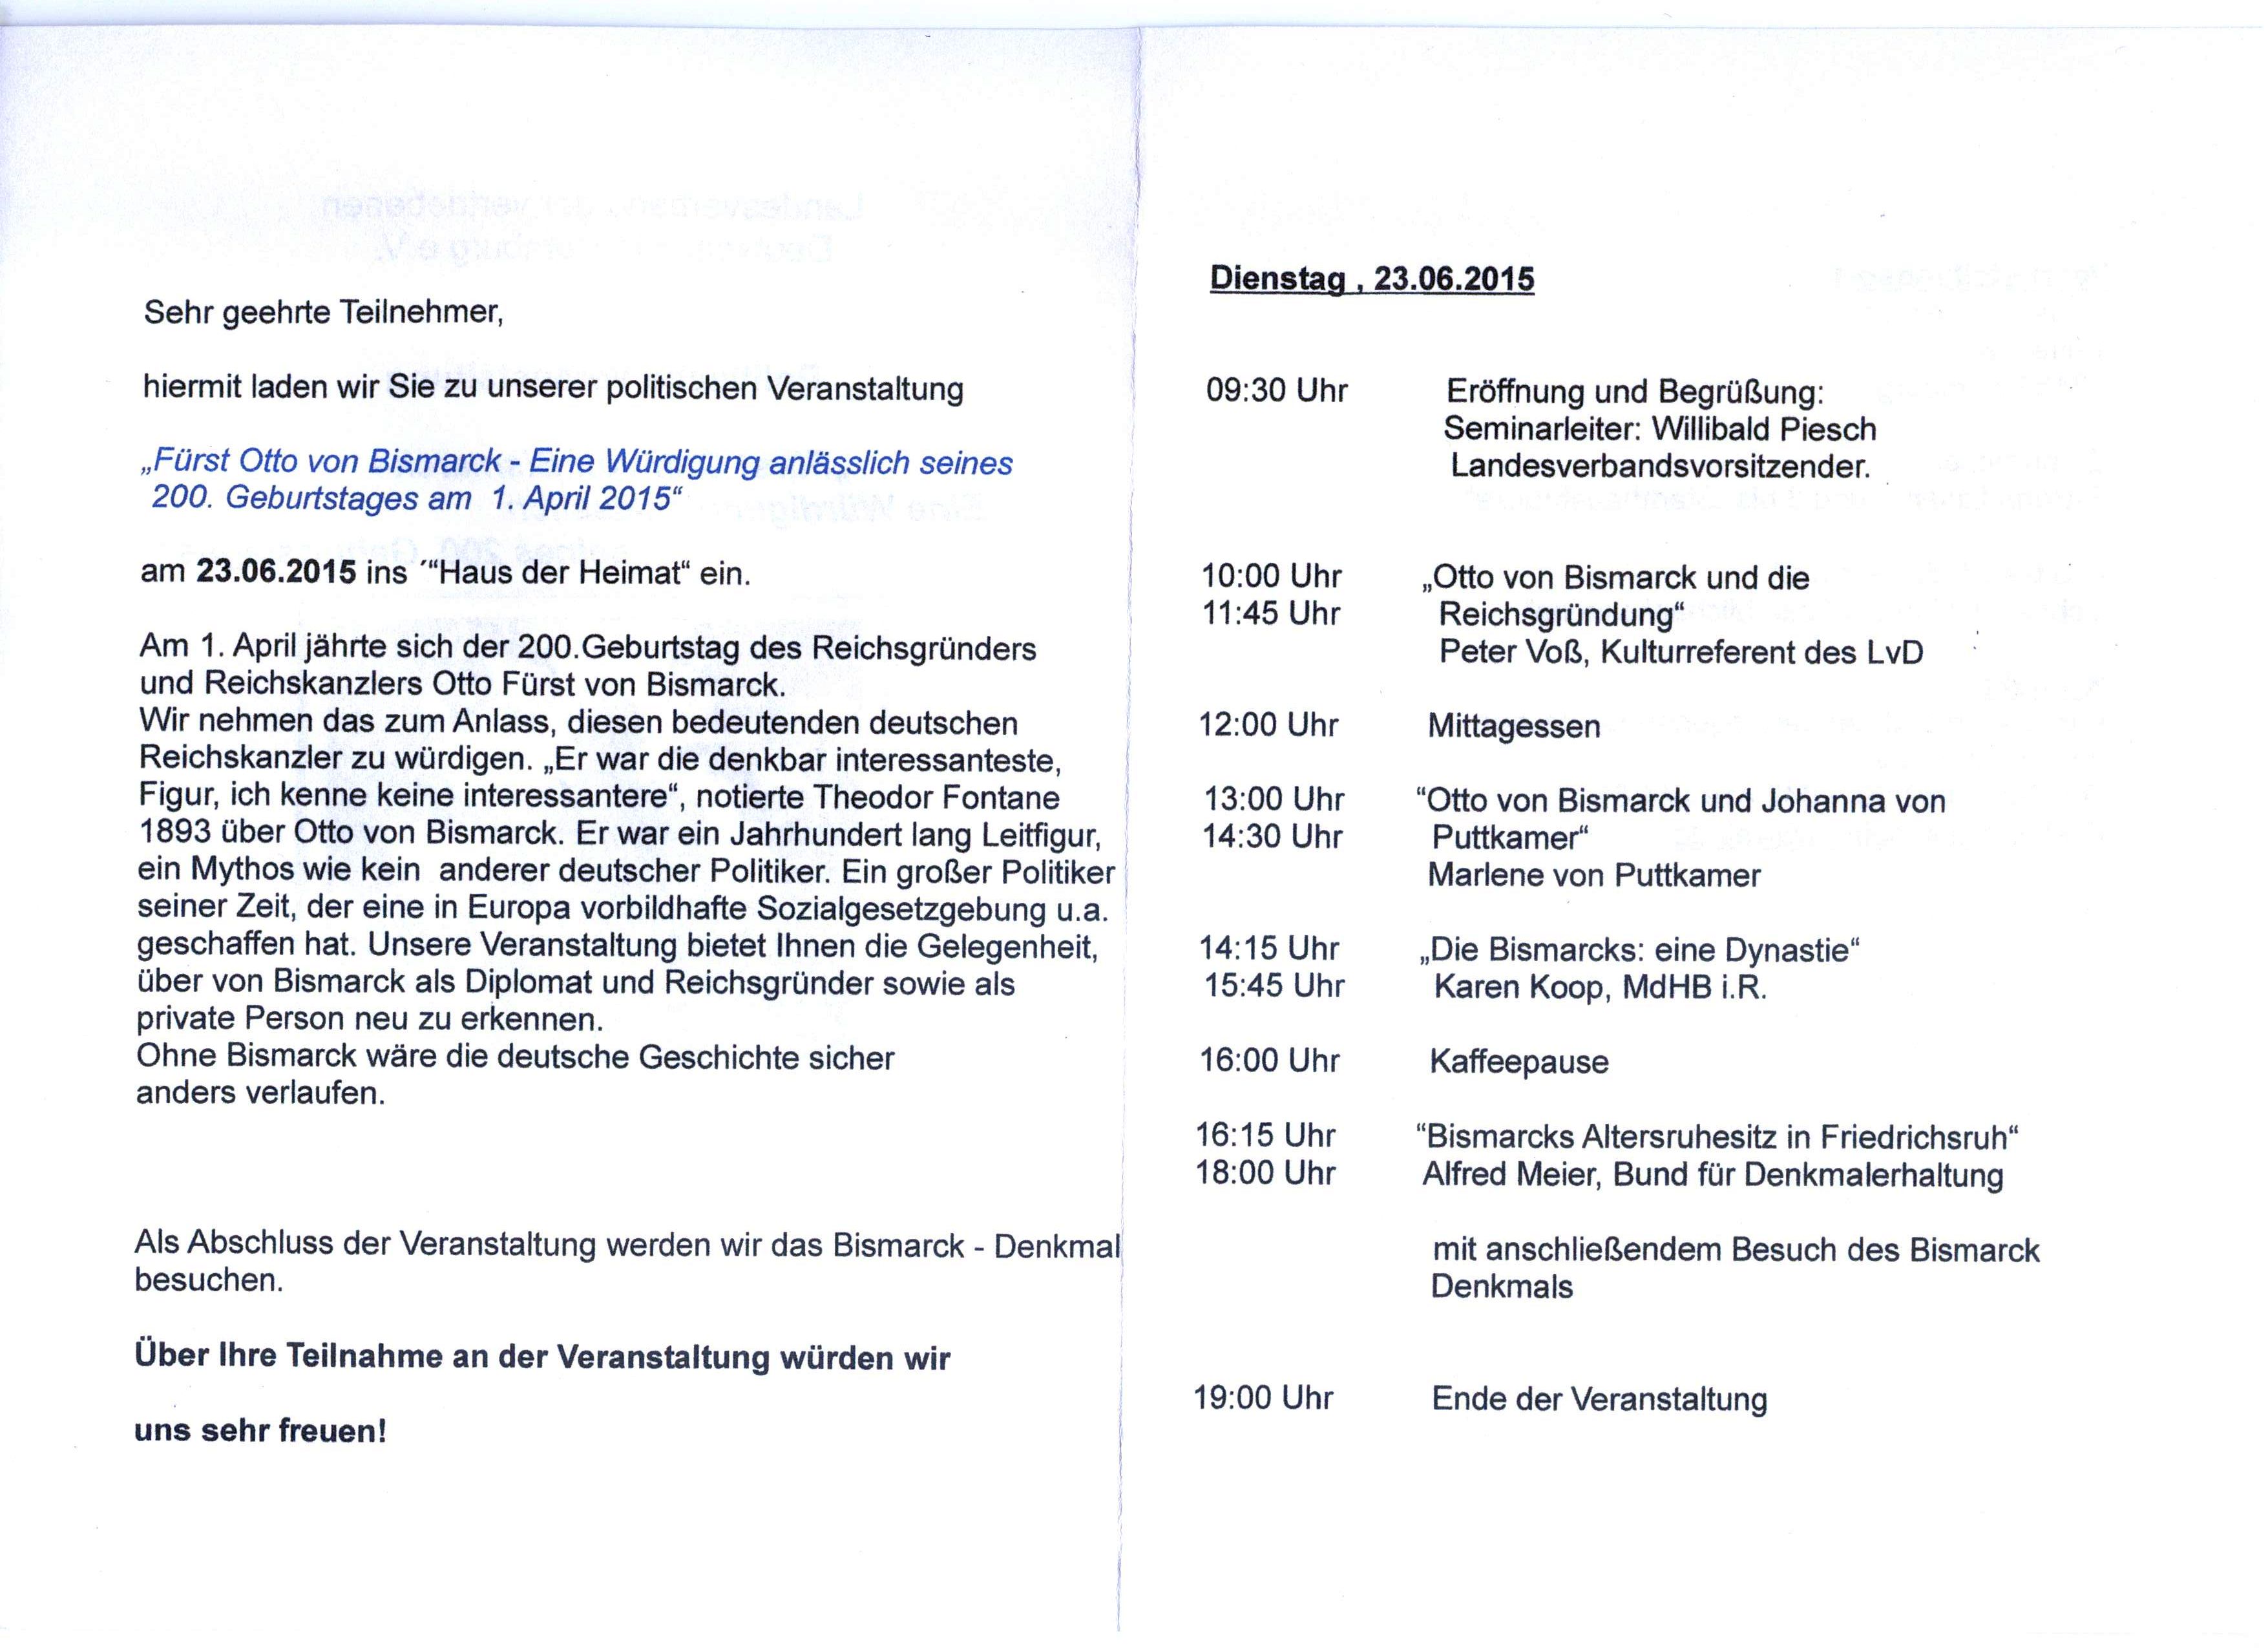 Politisches Seminar Otto von Bismarck am 23.6.2015